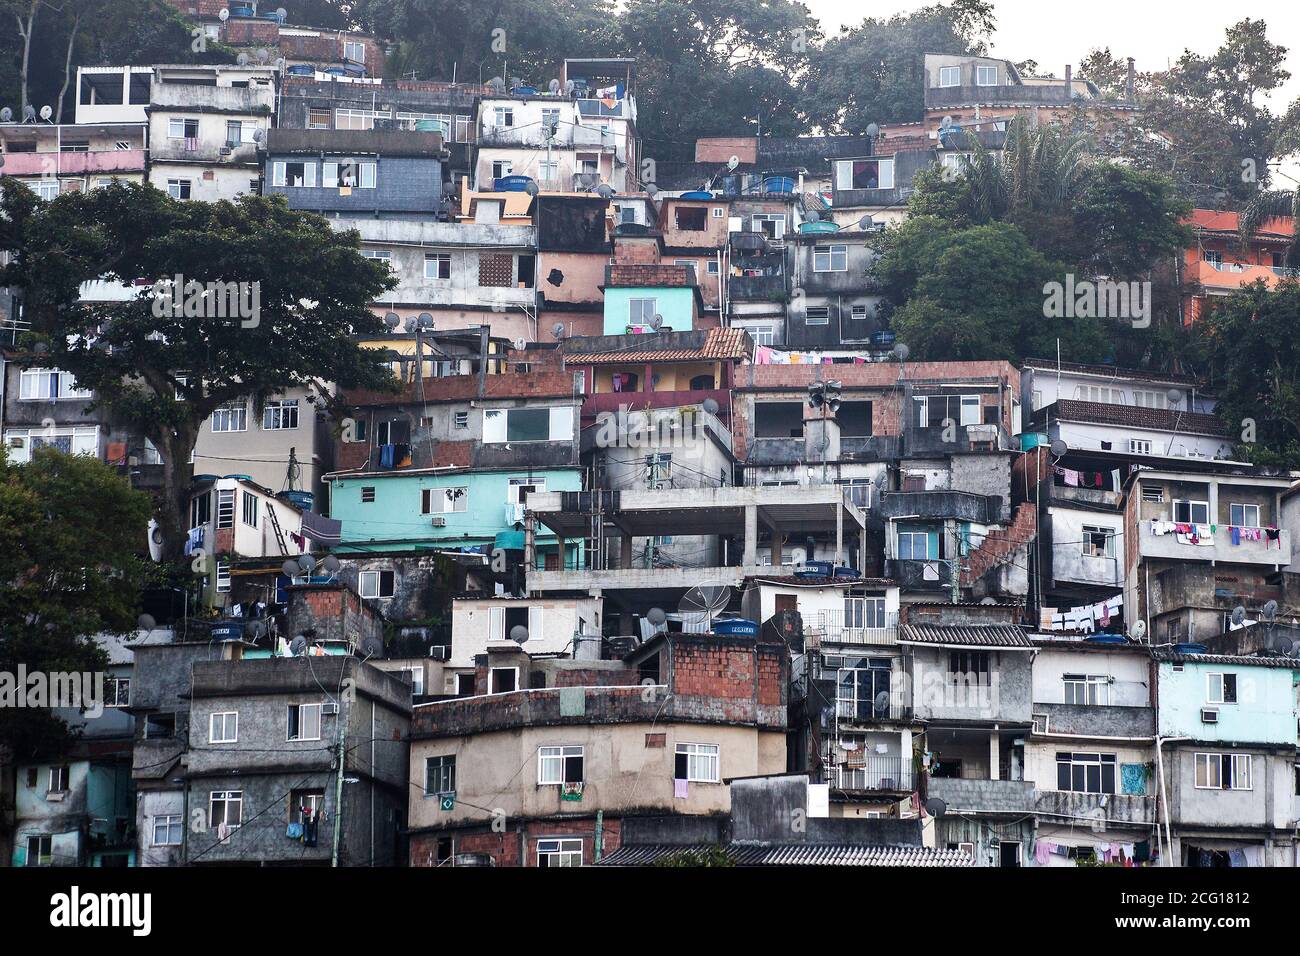 Favela slum in Rio de Janeiro, Brazil Stock Photo